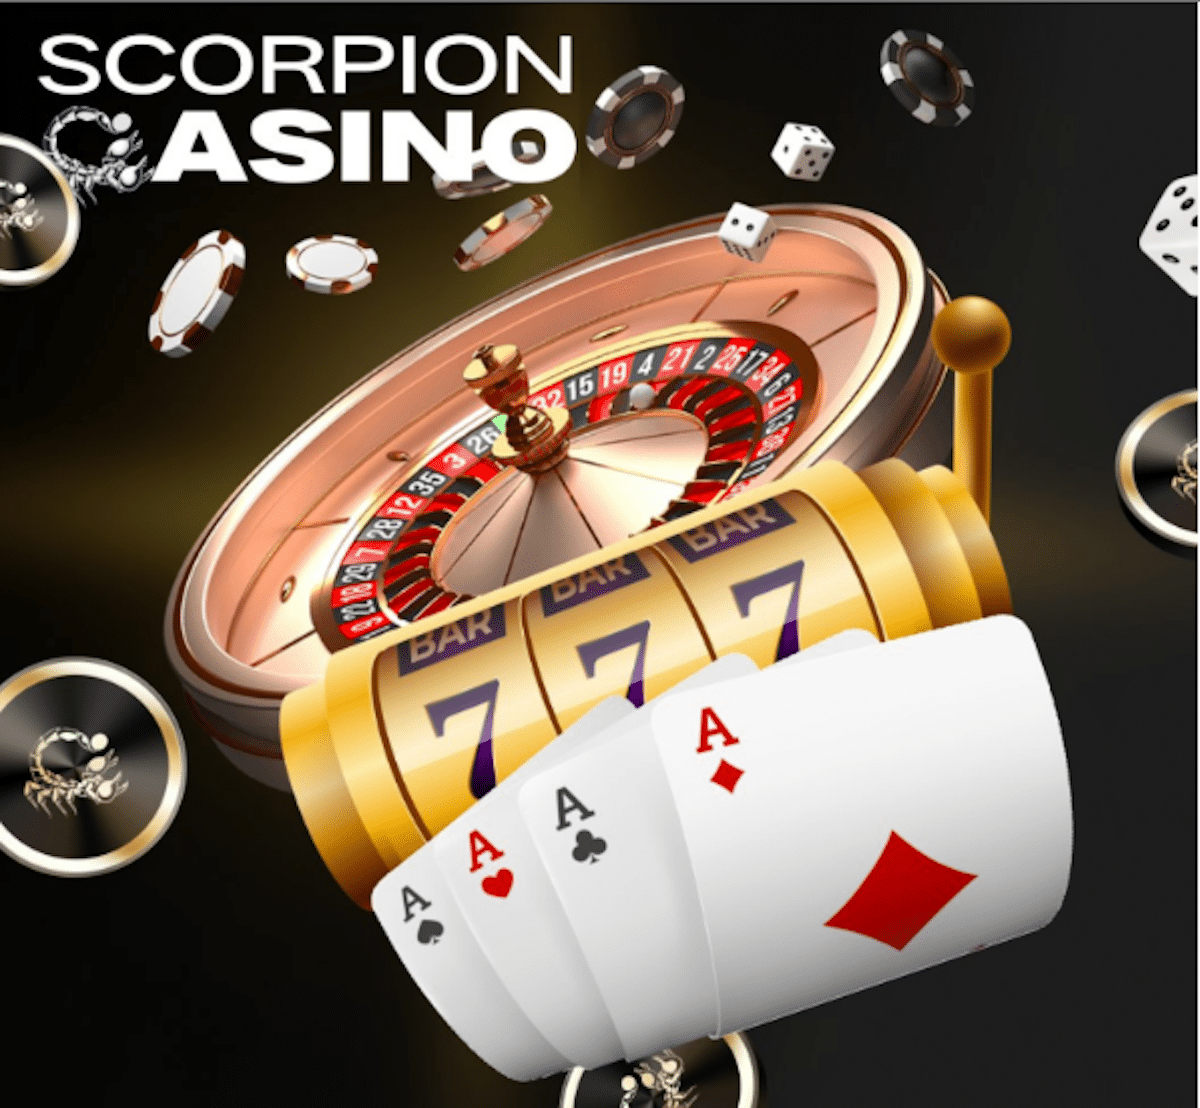 US$ 9 milhões arrecadados em pré-venda – Scorpion Casino segue em alta